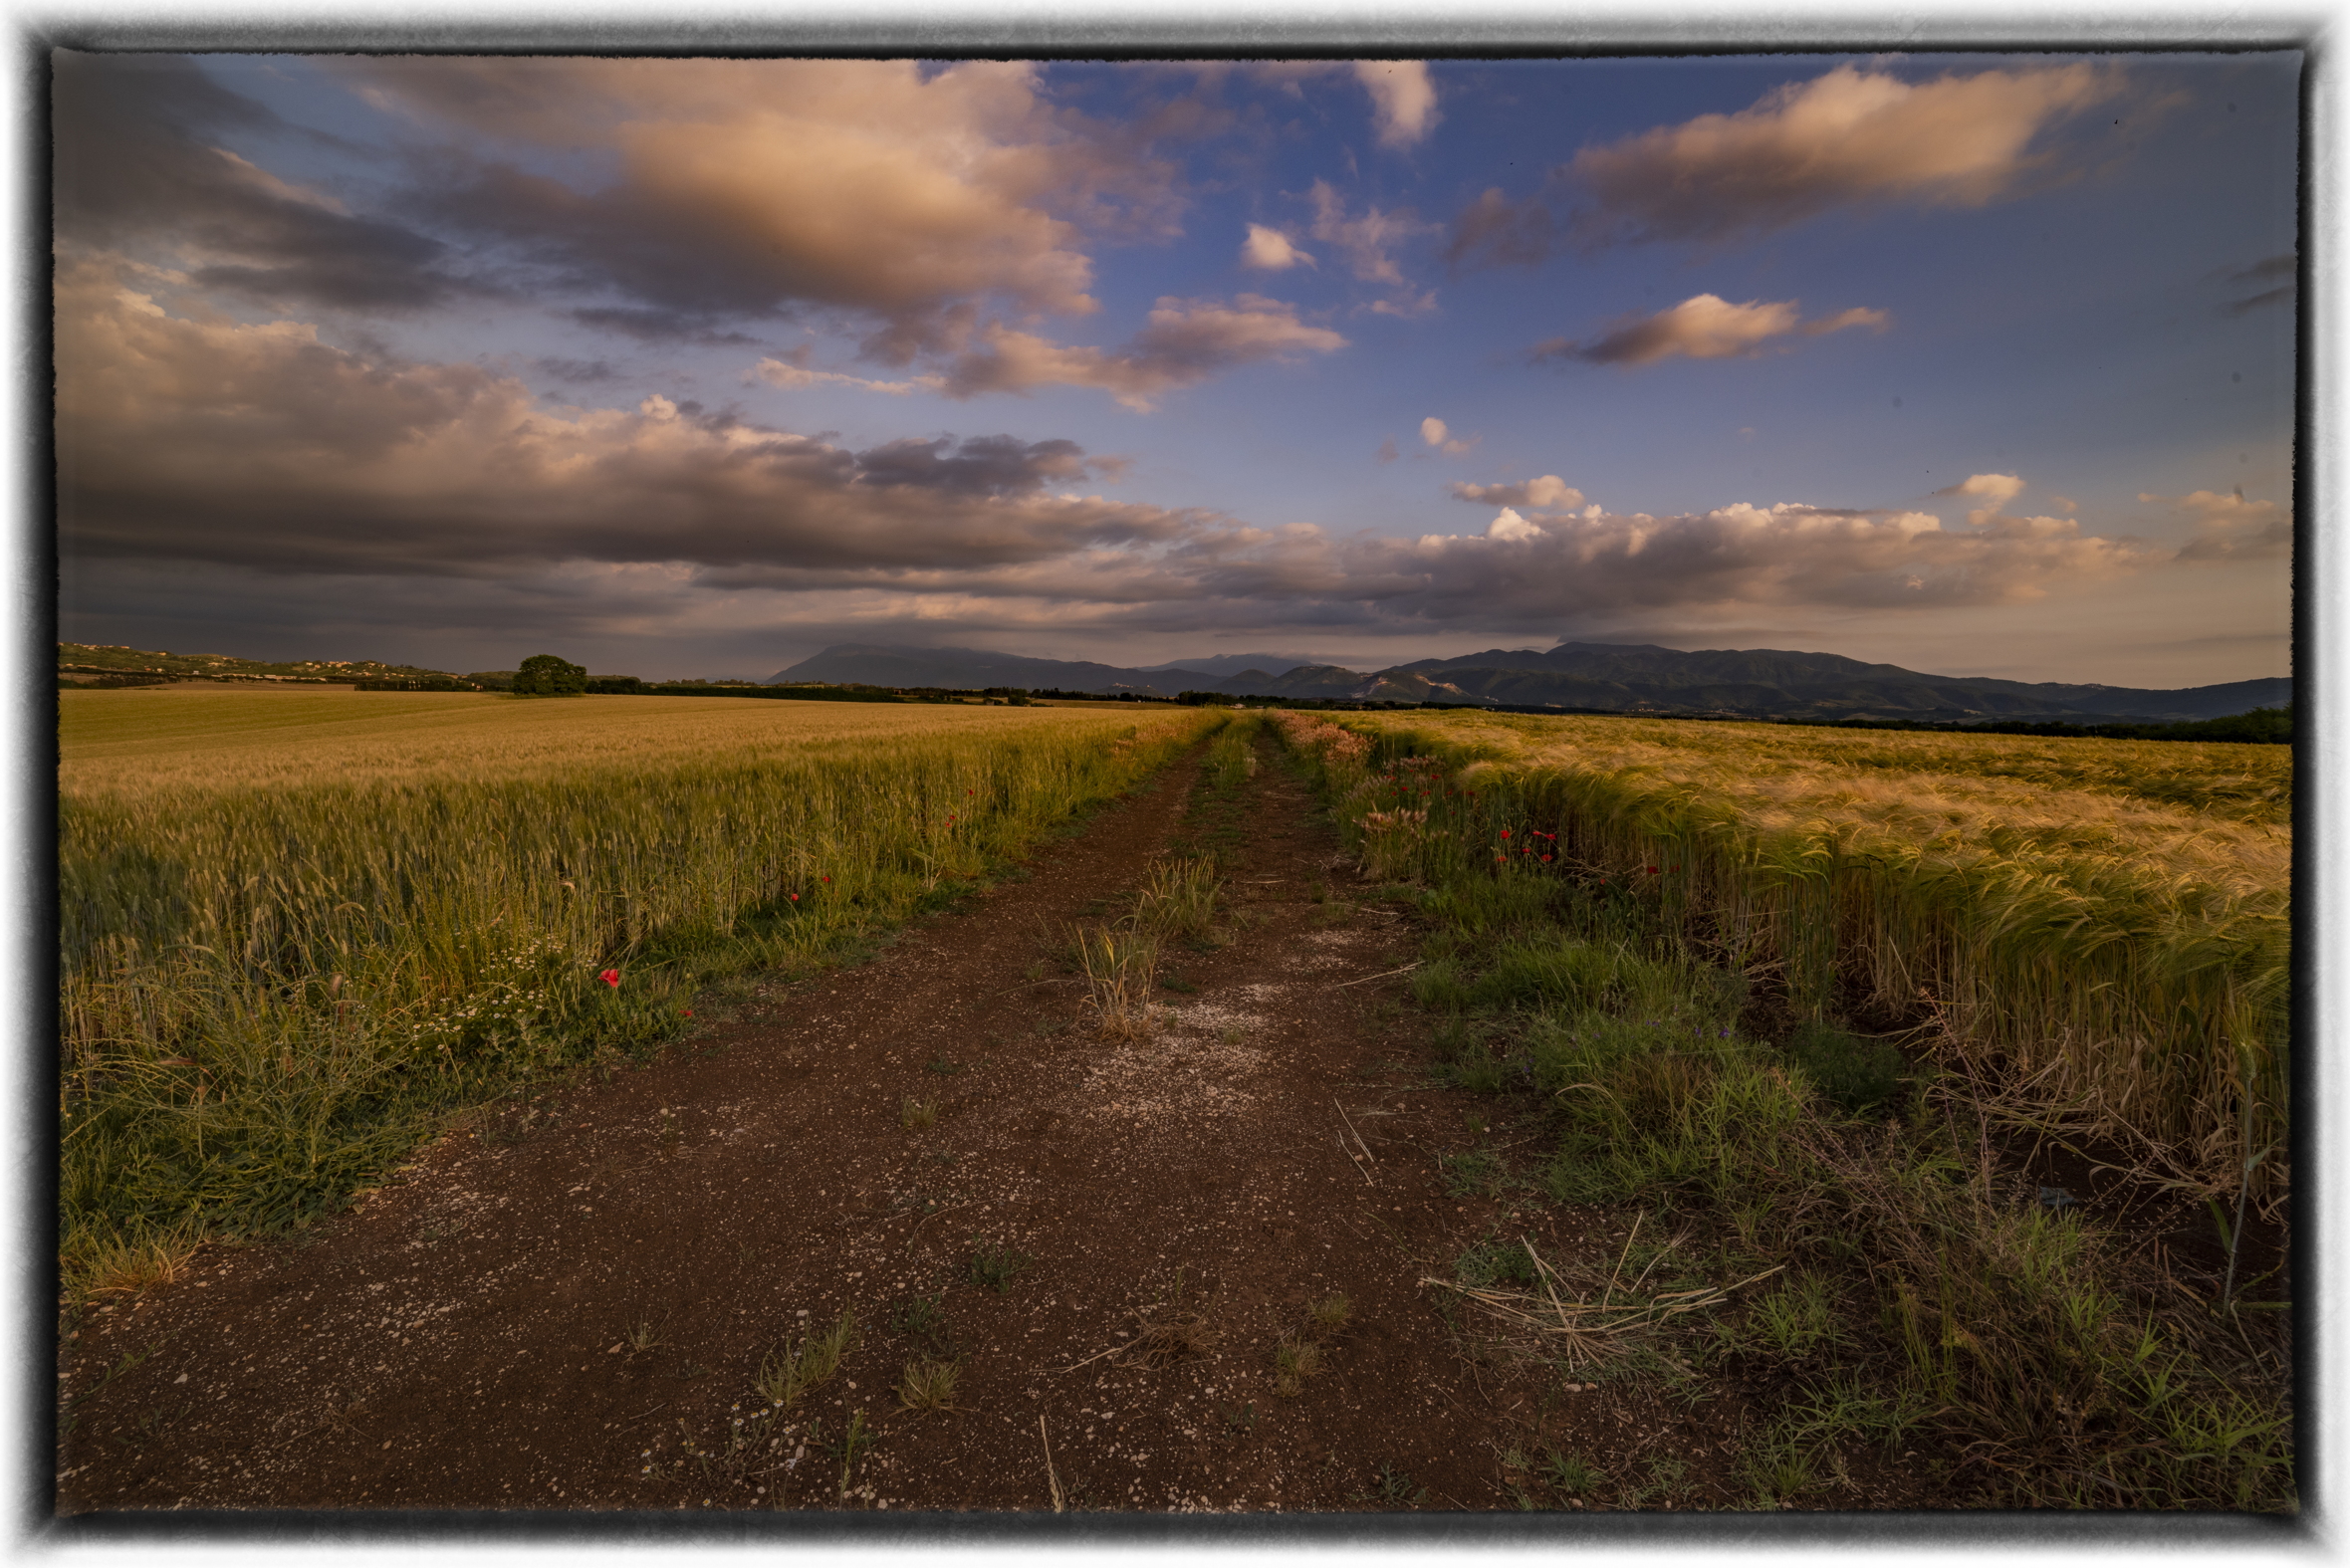 Between barley and wheat at sunset...